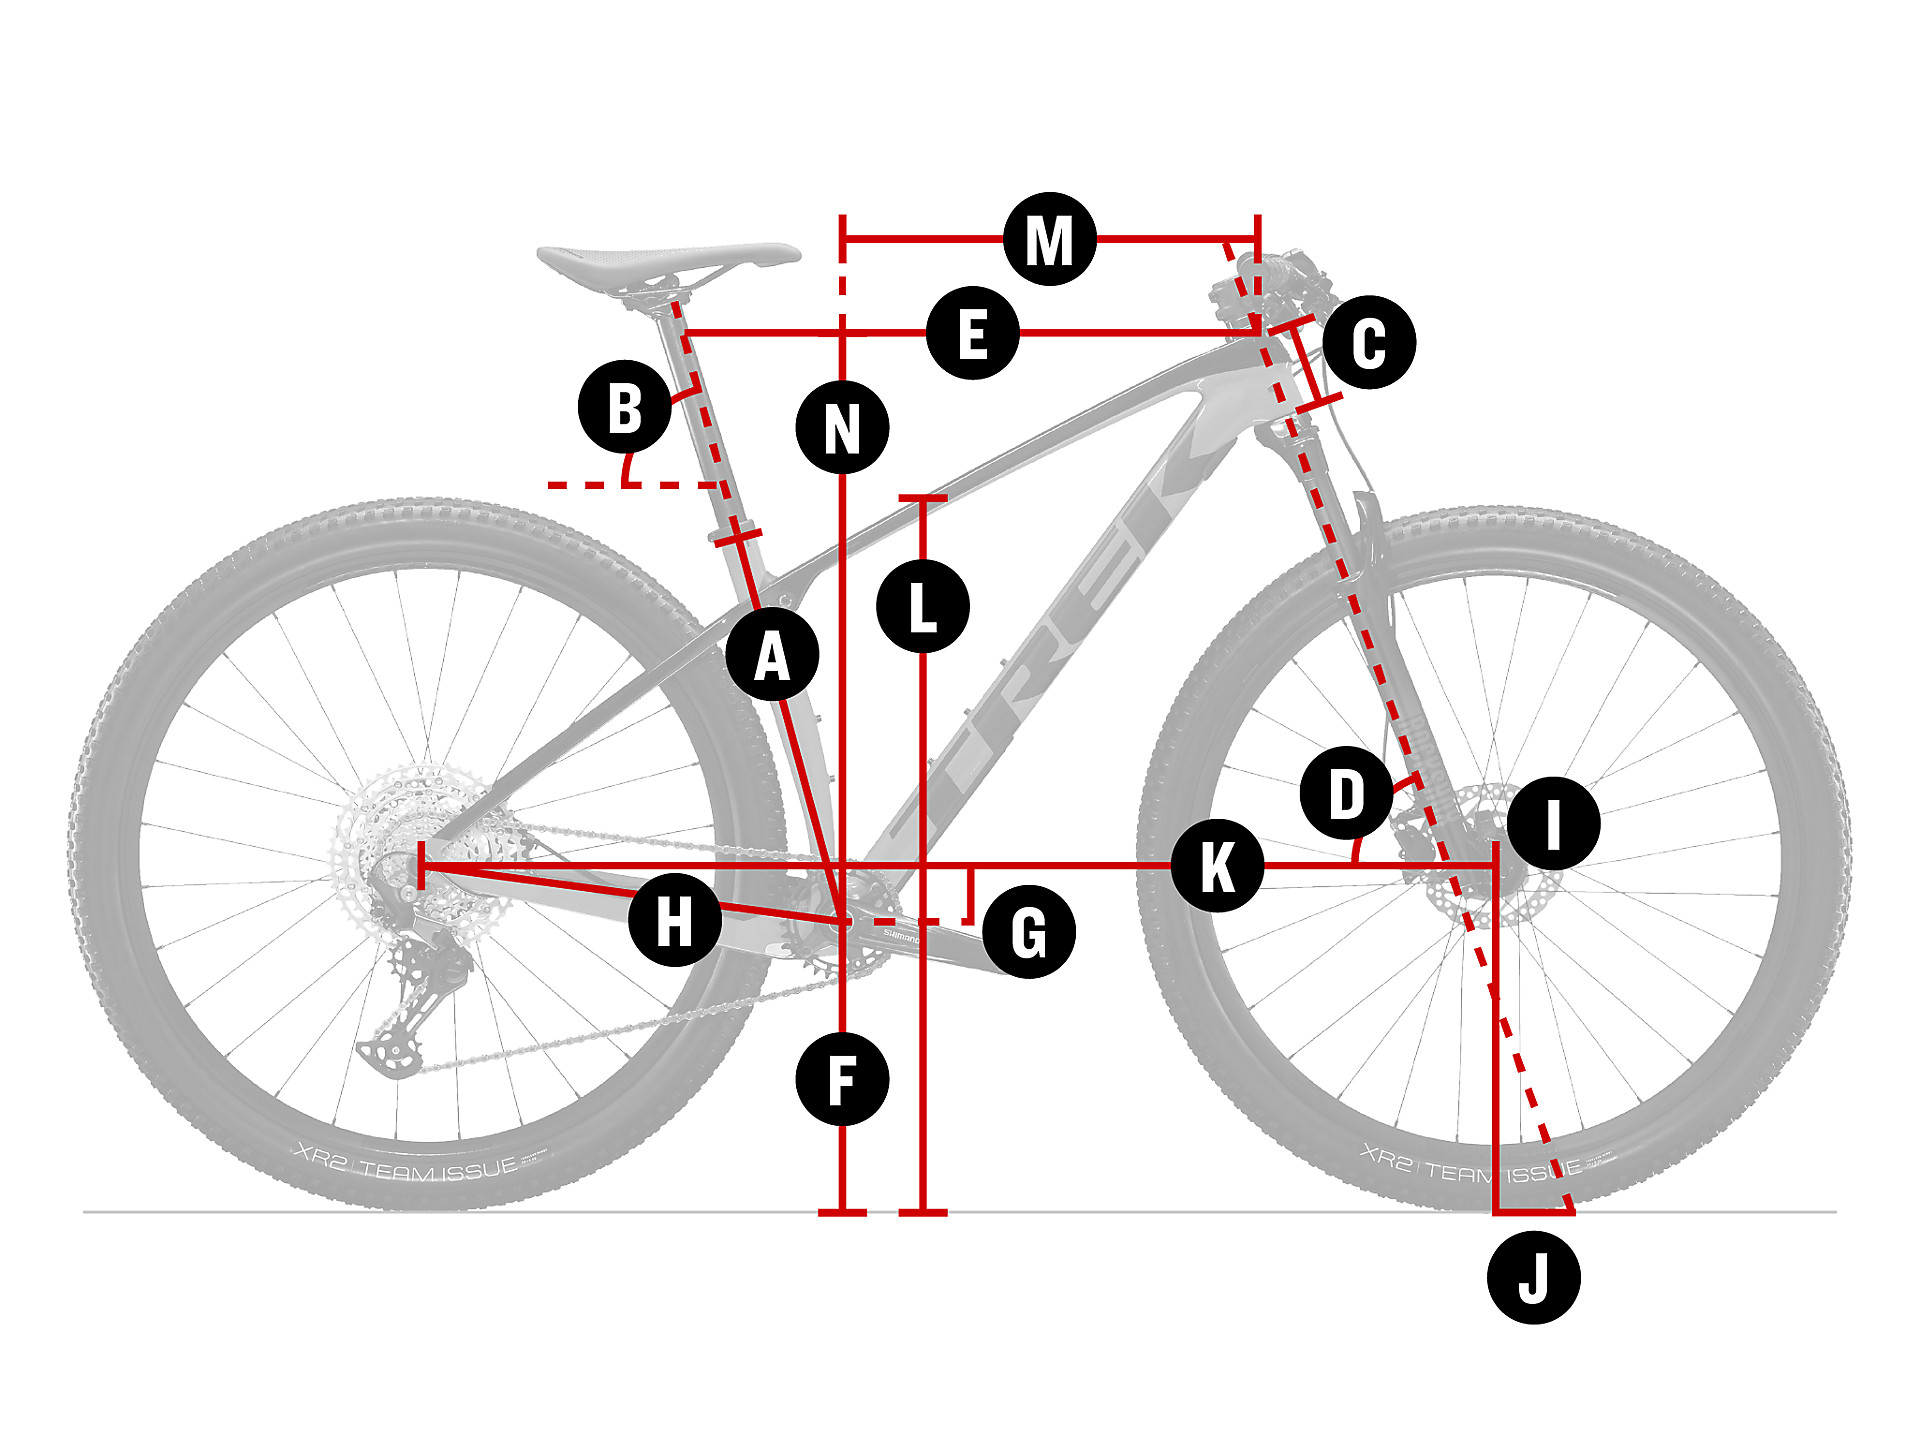 Meander idioom meerderheid Procaliber 9.7 | Trek Bikes